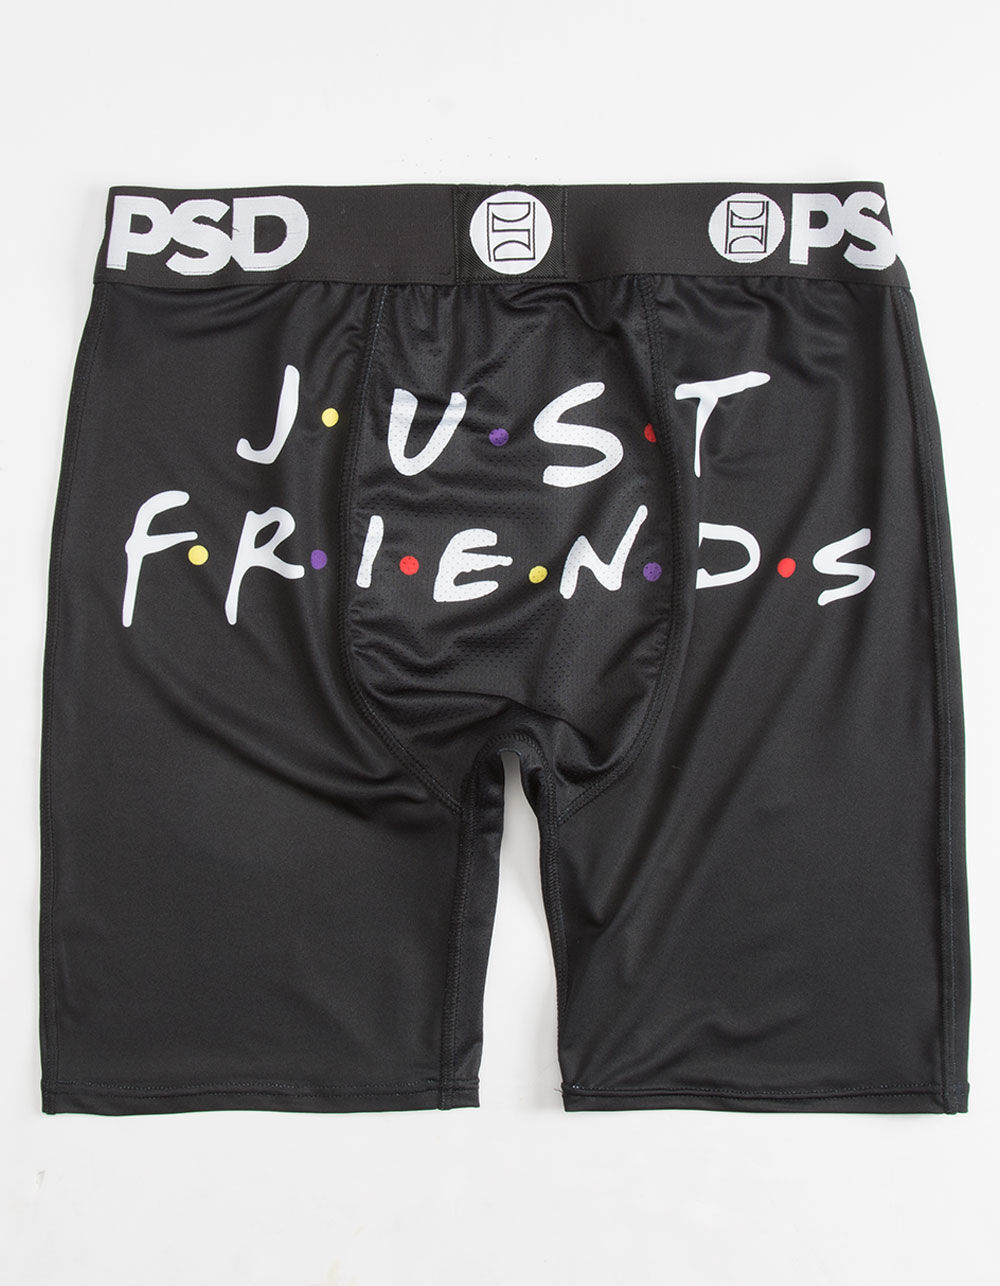 PSD Original Friends Mens Boxer Briefs